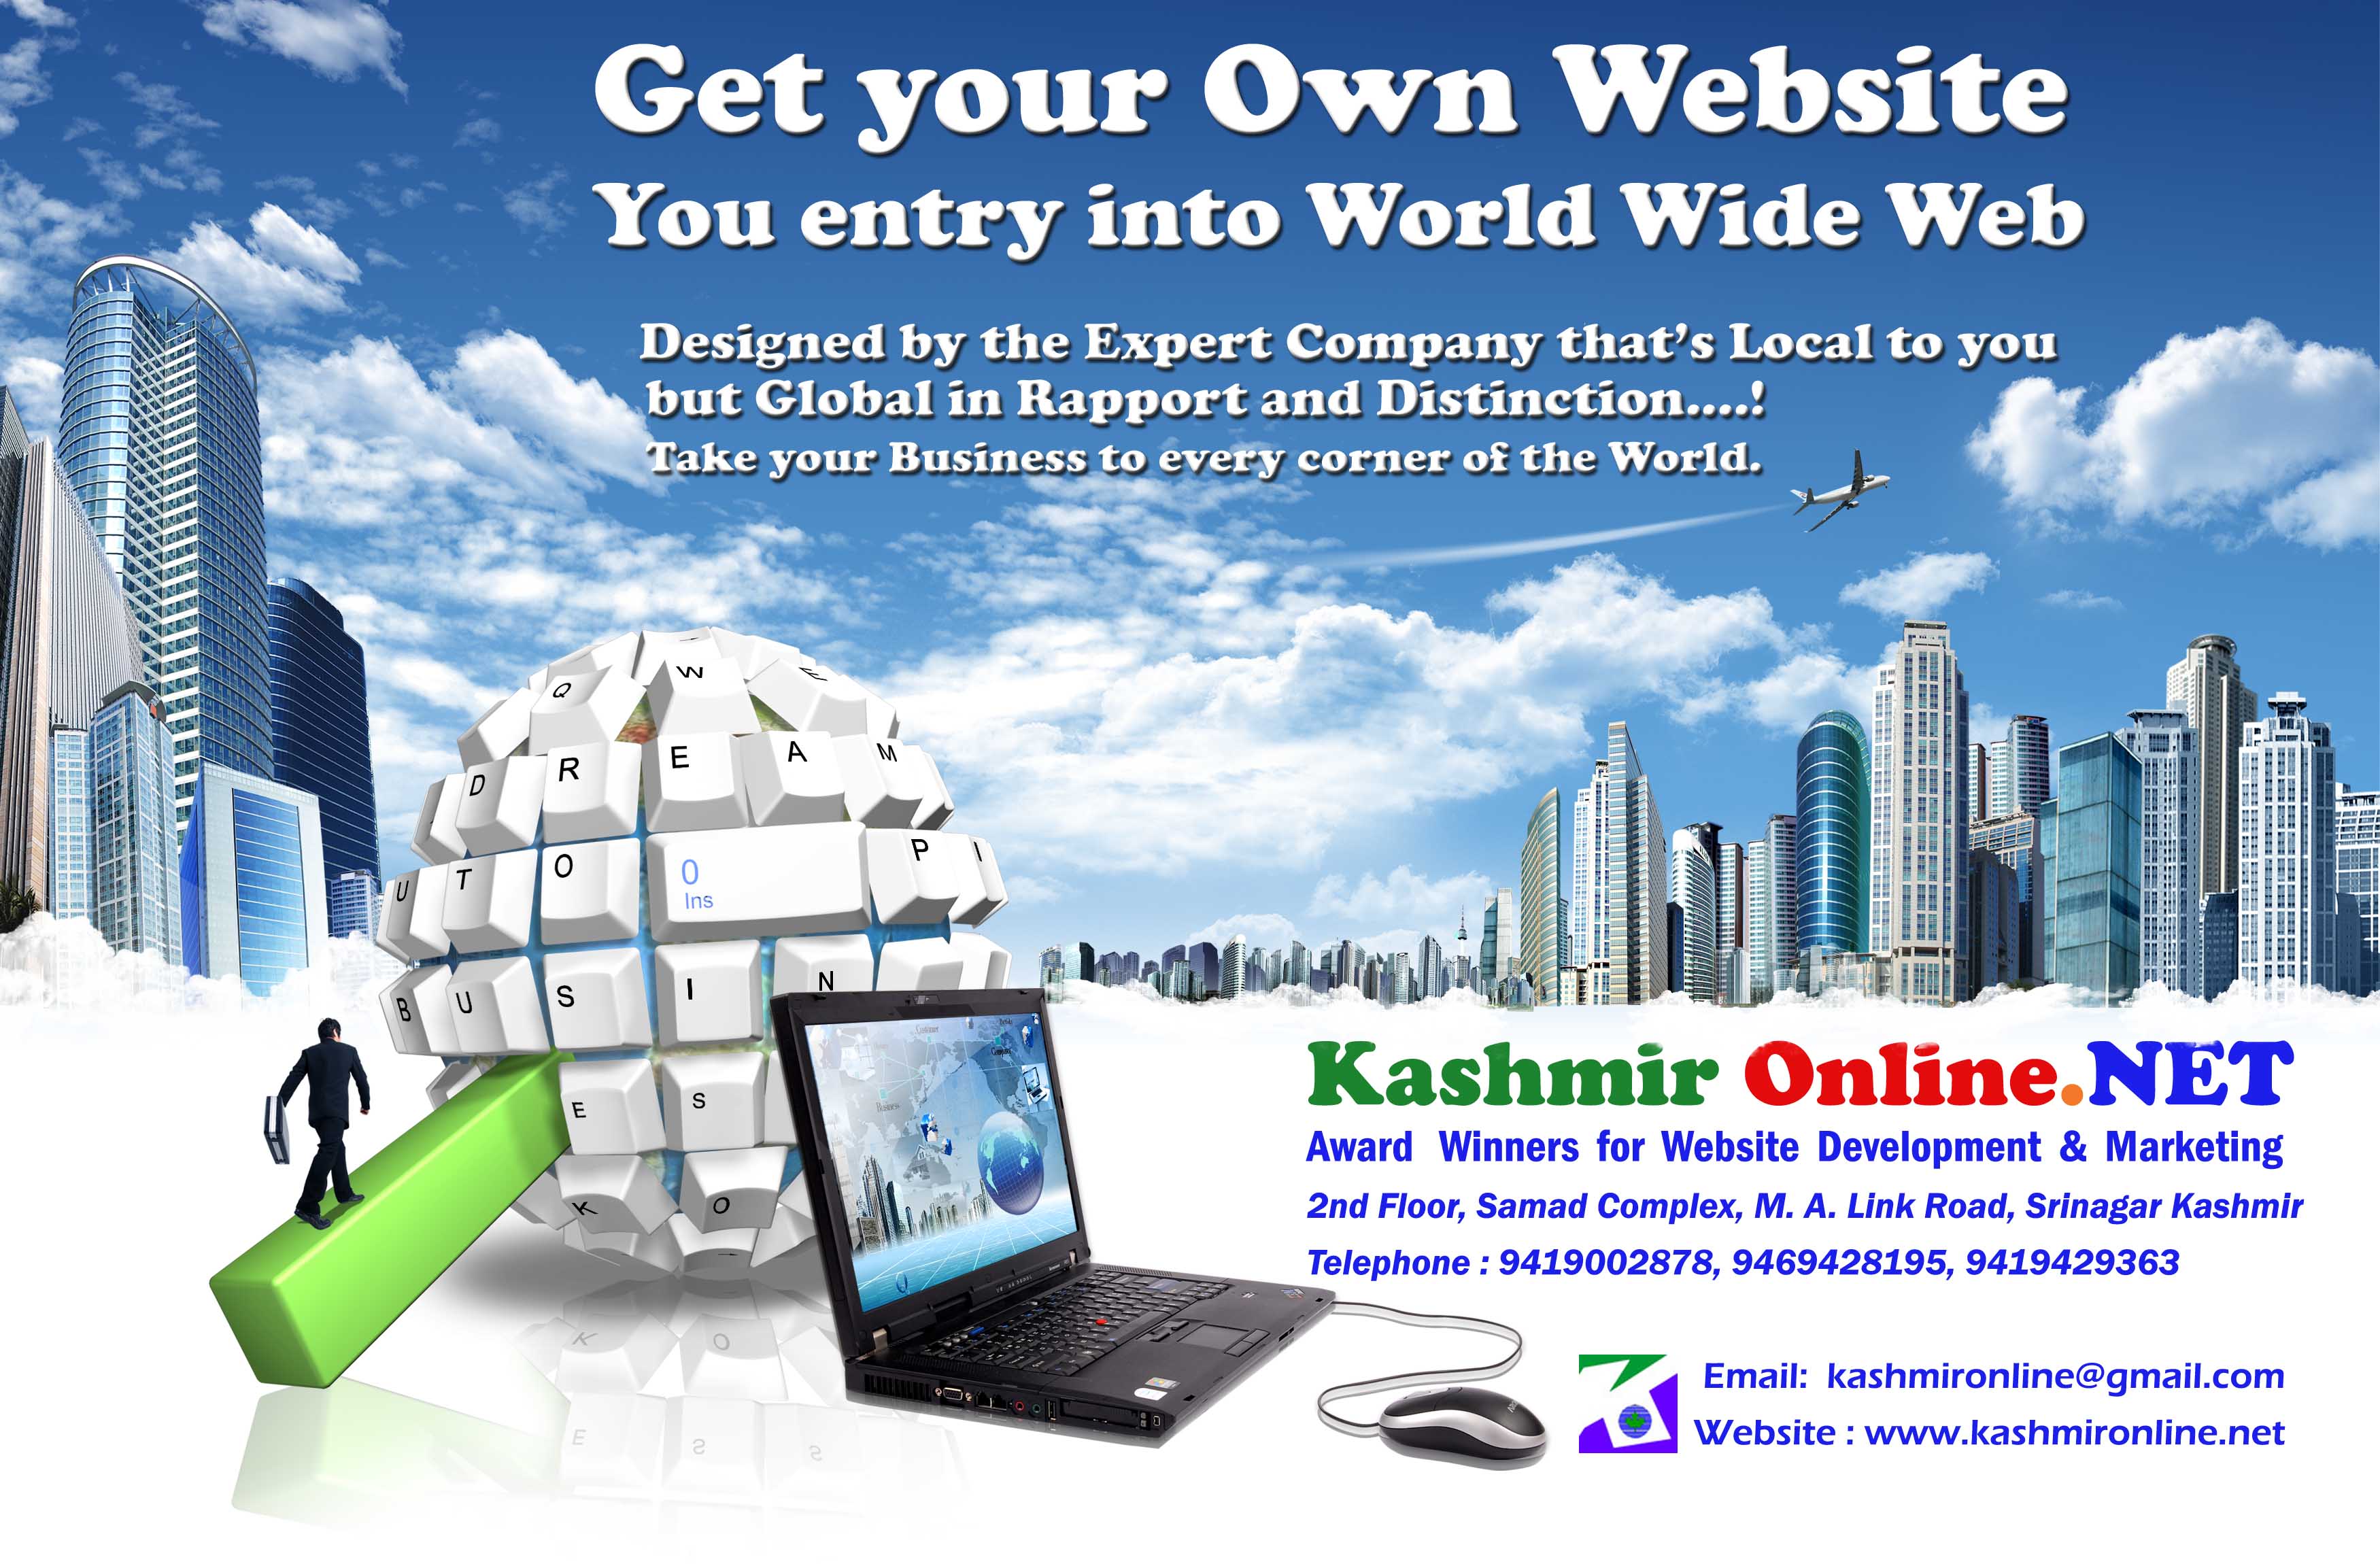 Register on Kashmir Online